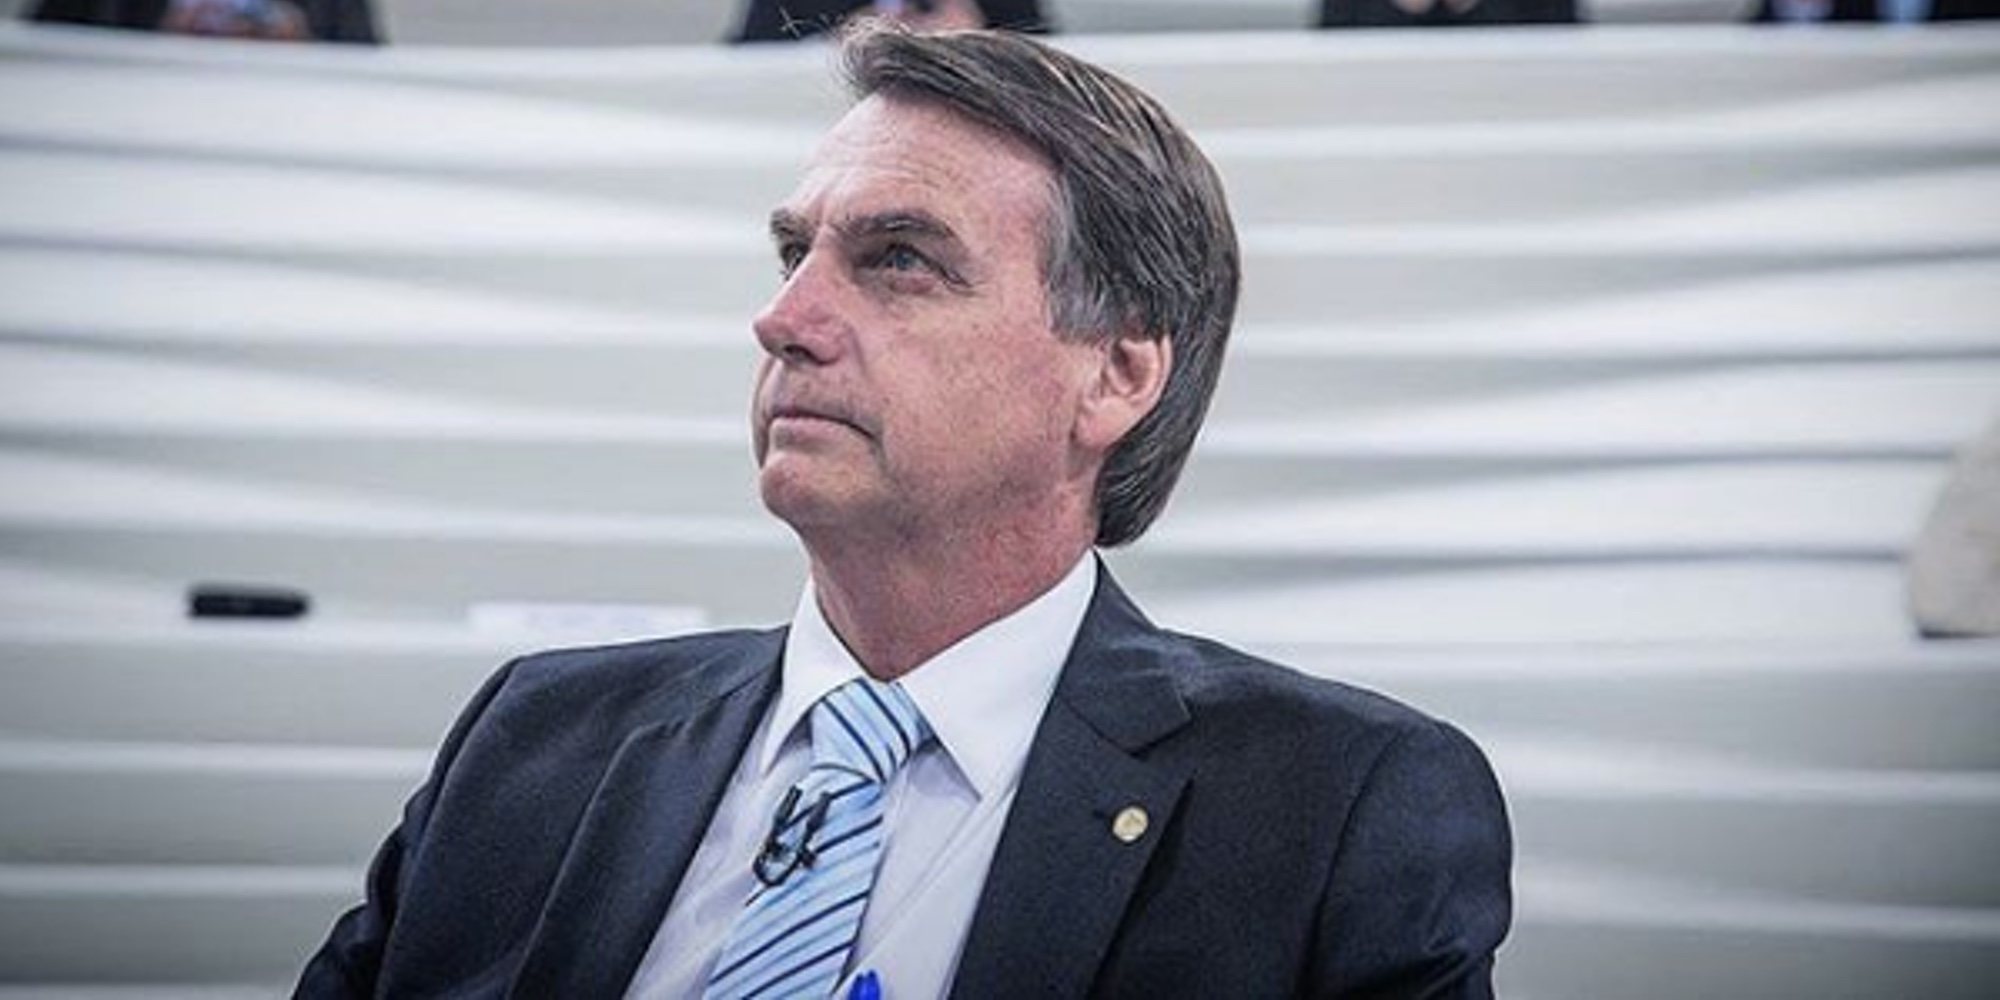 El candidato a la presidencia de Brasil, Jair Bolsonaro, apuñalado en un acto electoral